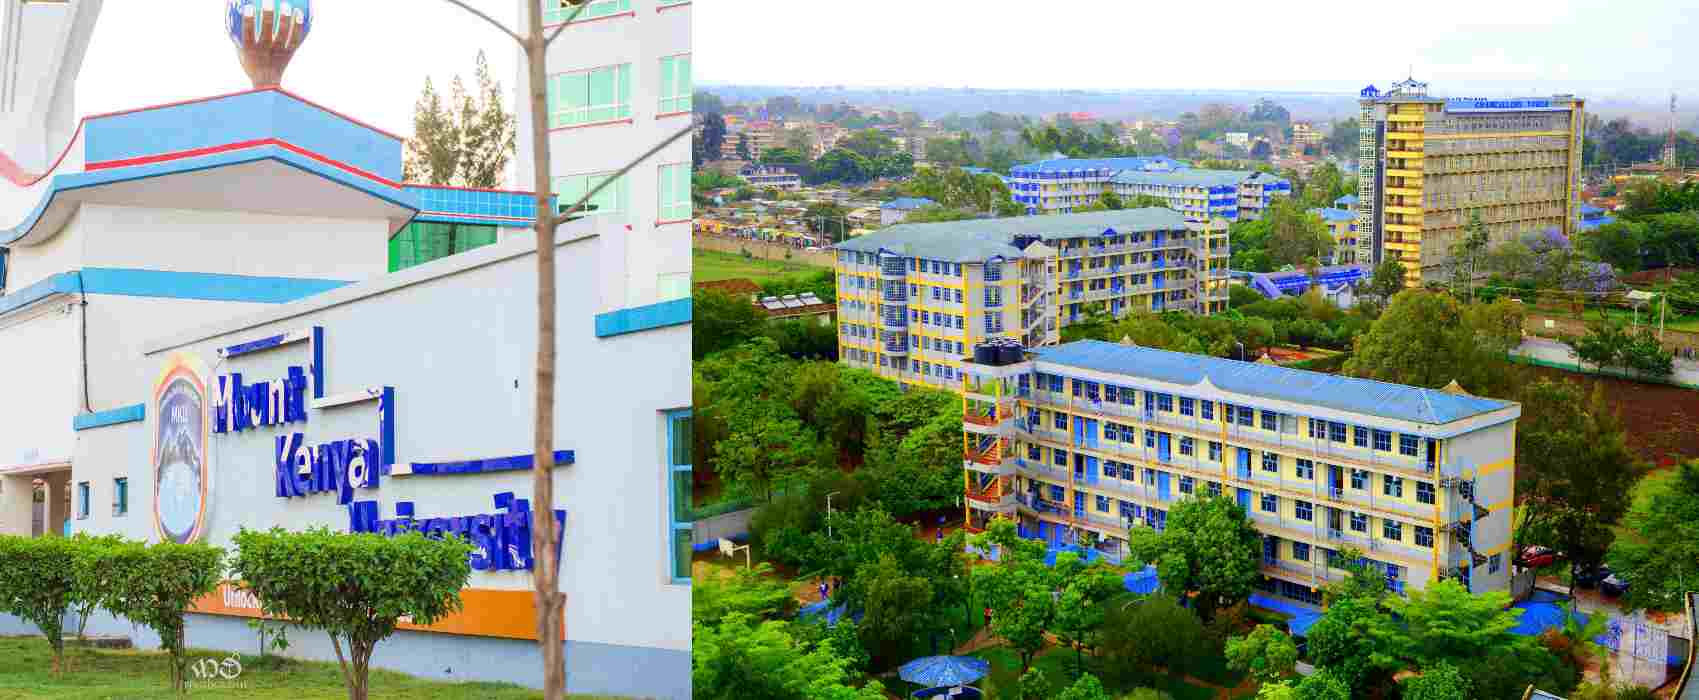 Photocollage of Mount Kenya University.